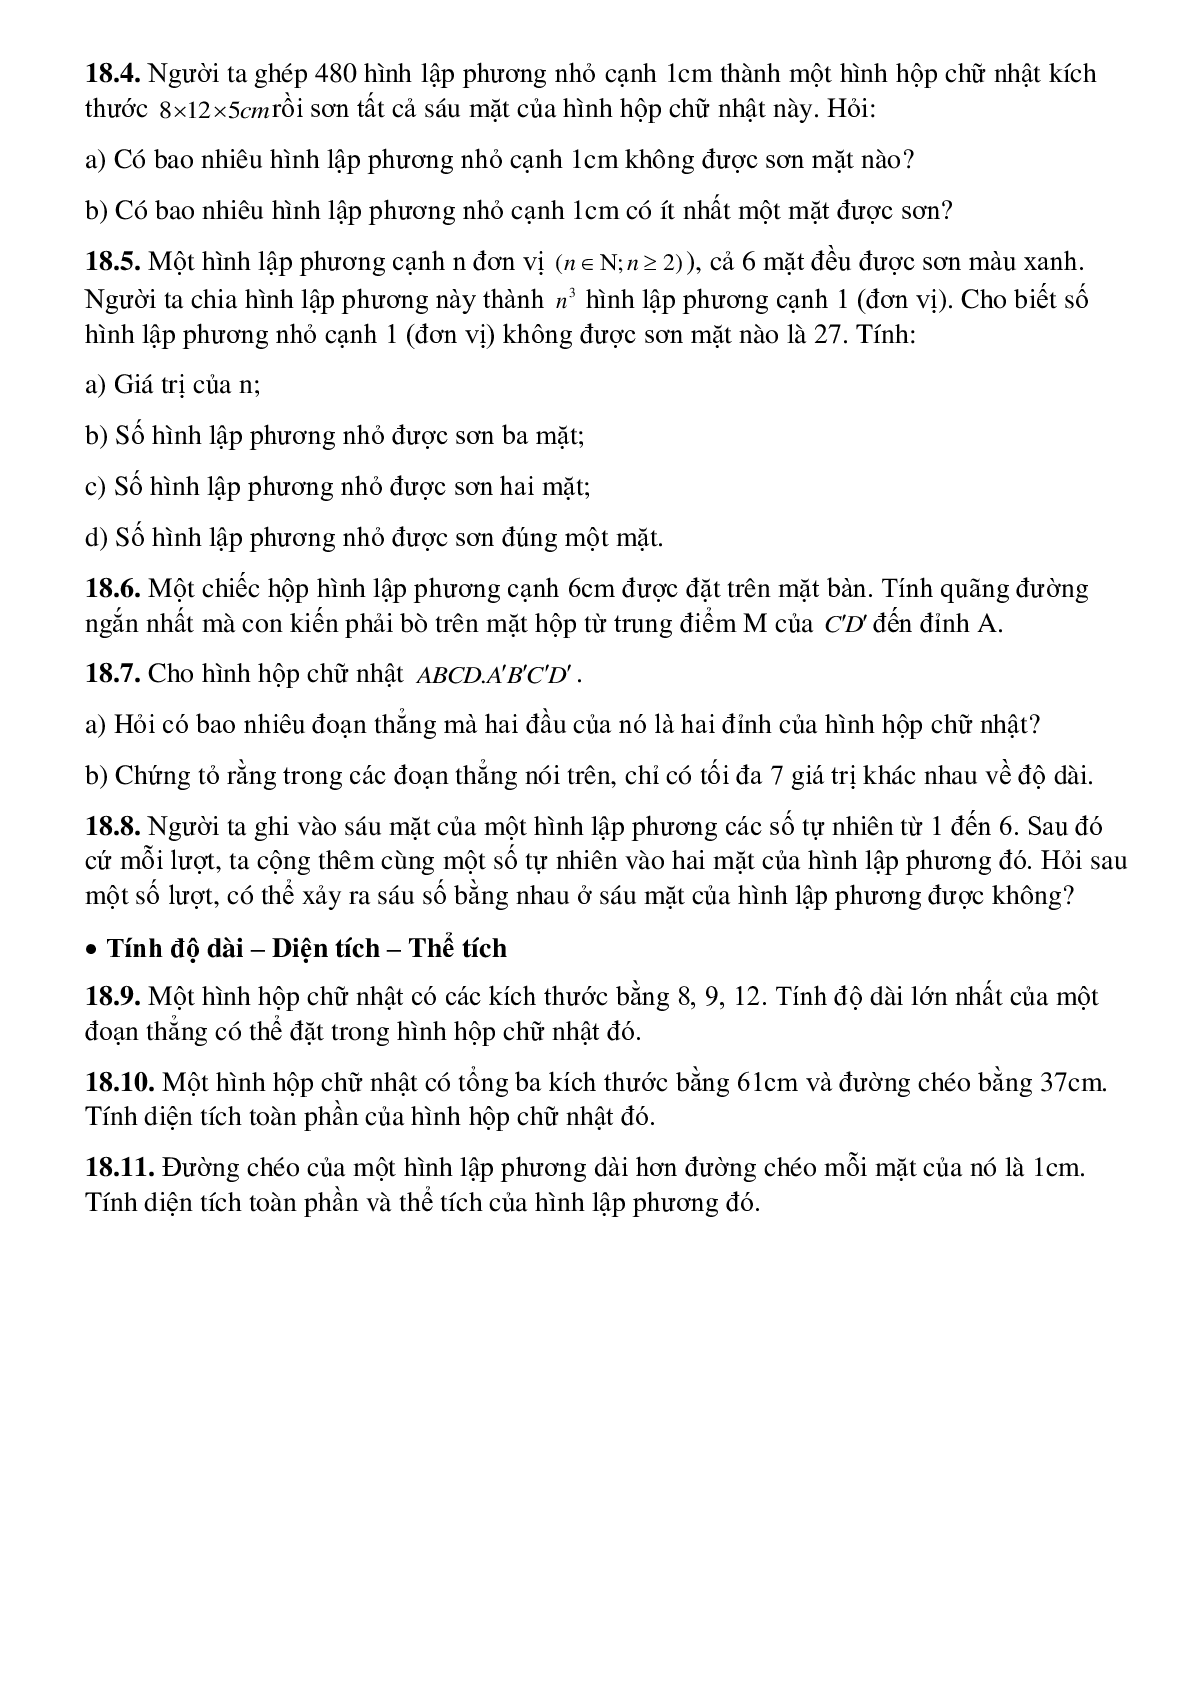 Hình hộp chữ nhật - Hình học toán 8 (trang 6)